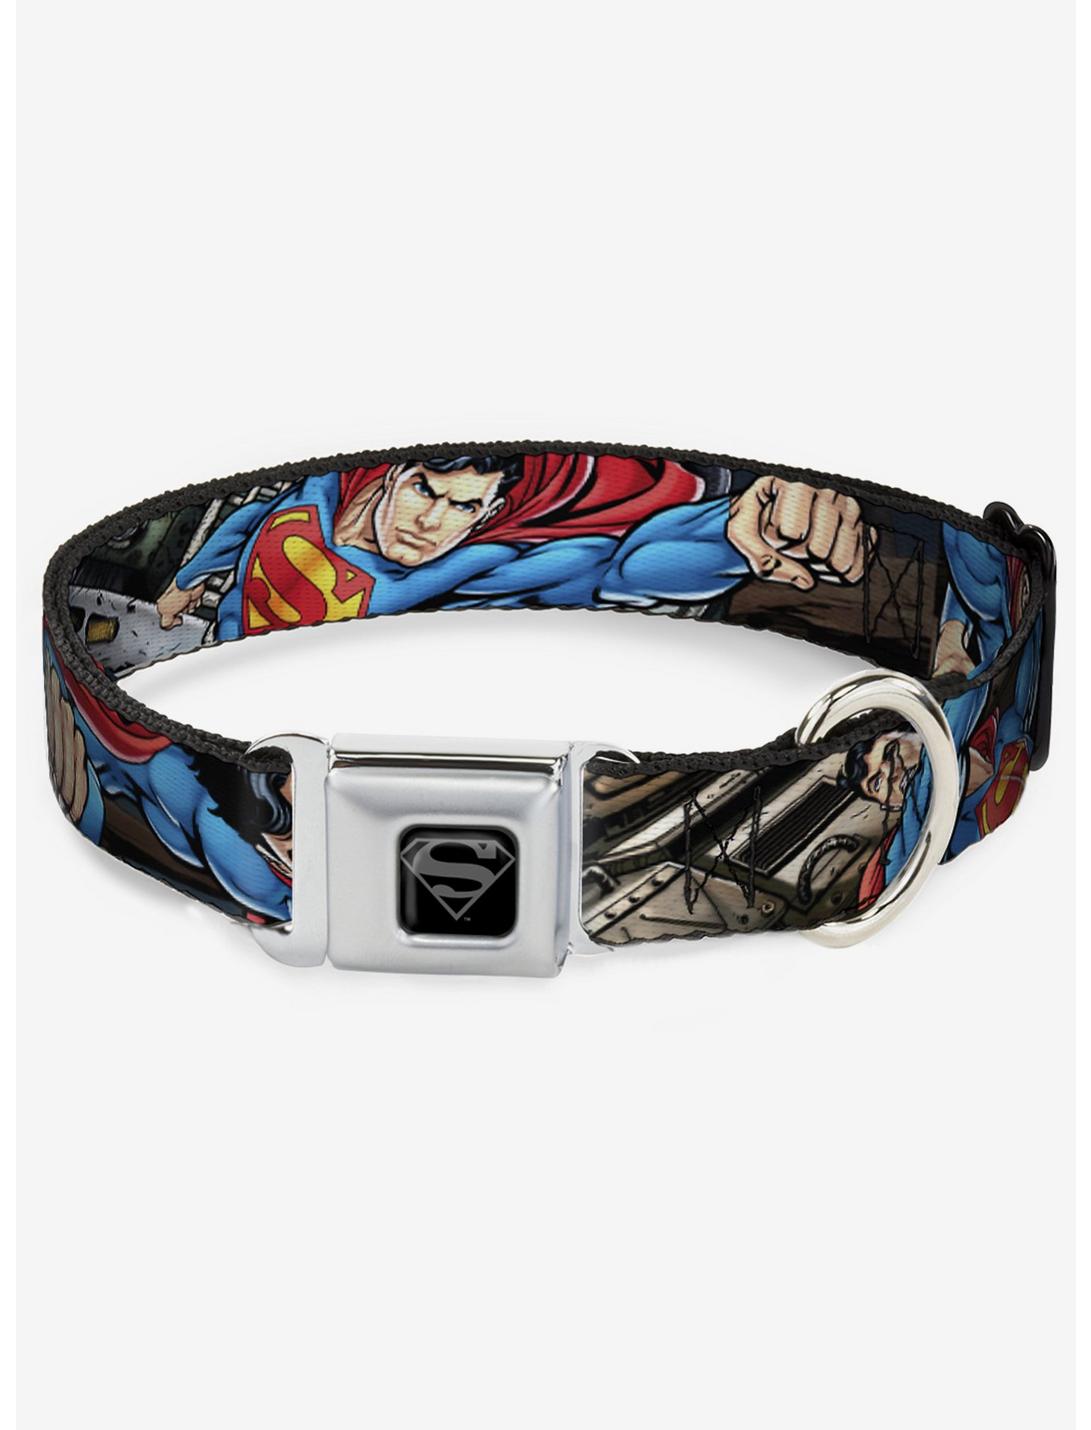 DC Comics Justice League Superman Metropolis Face Off Seatbelt Buckle Dog Collar, MULTICOLOR, hi-res